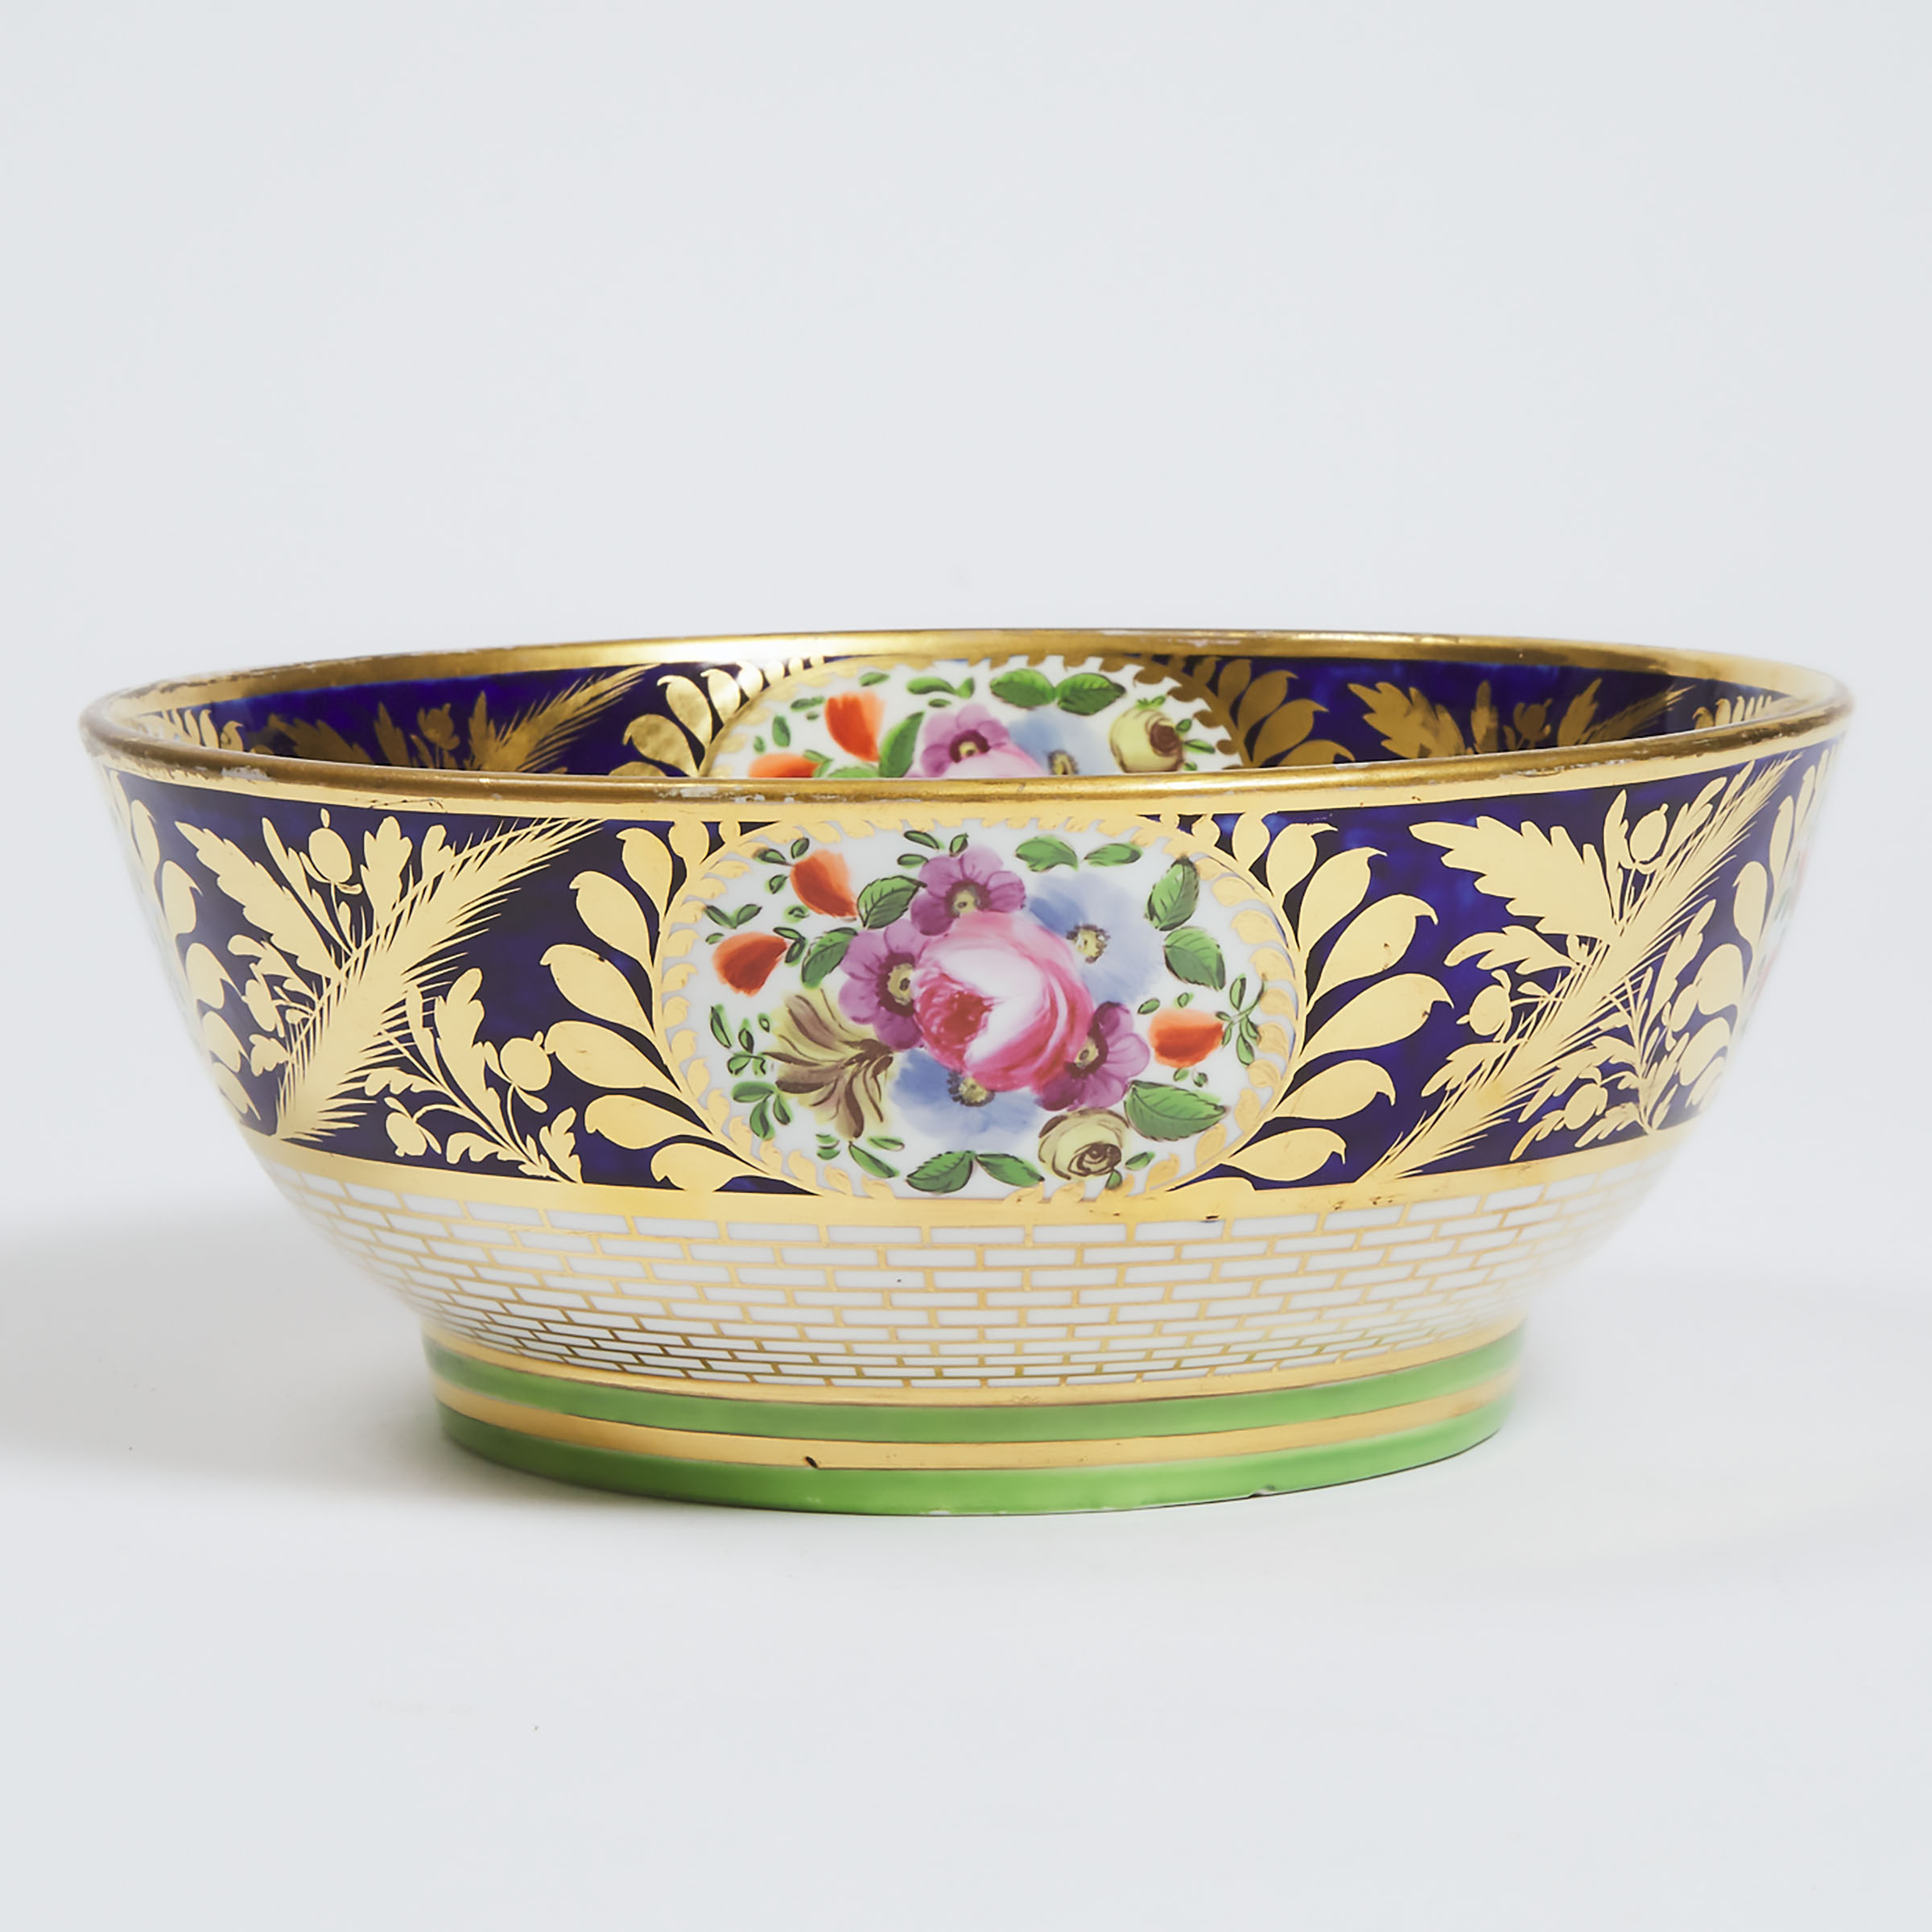 Minton Floral Paneled Fruit Bowl, c.1820